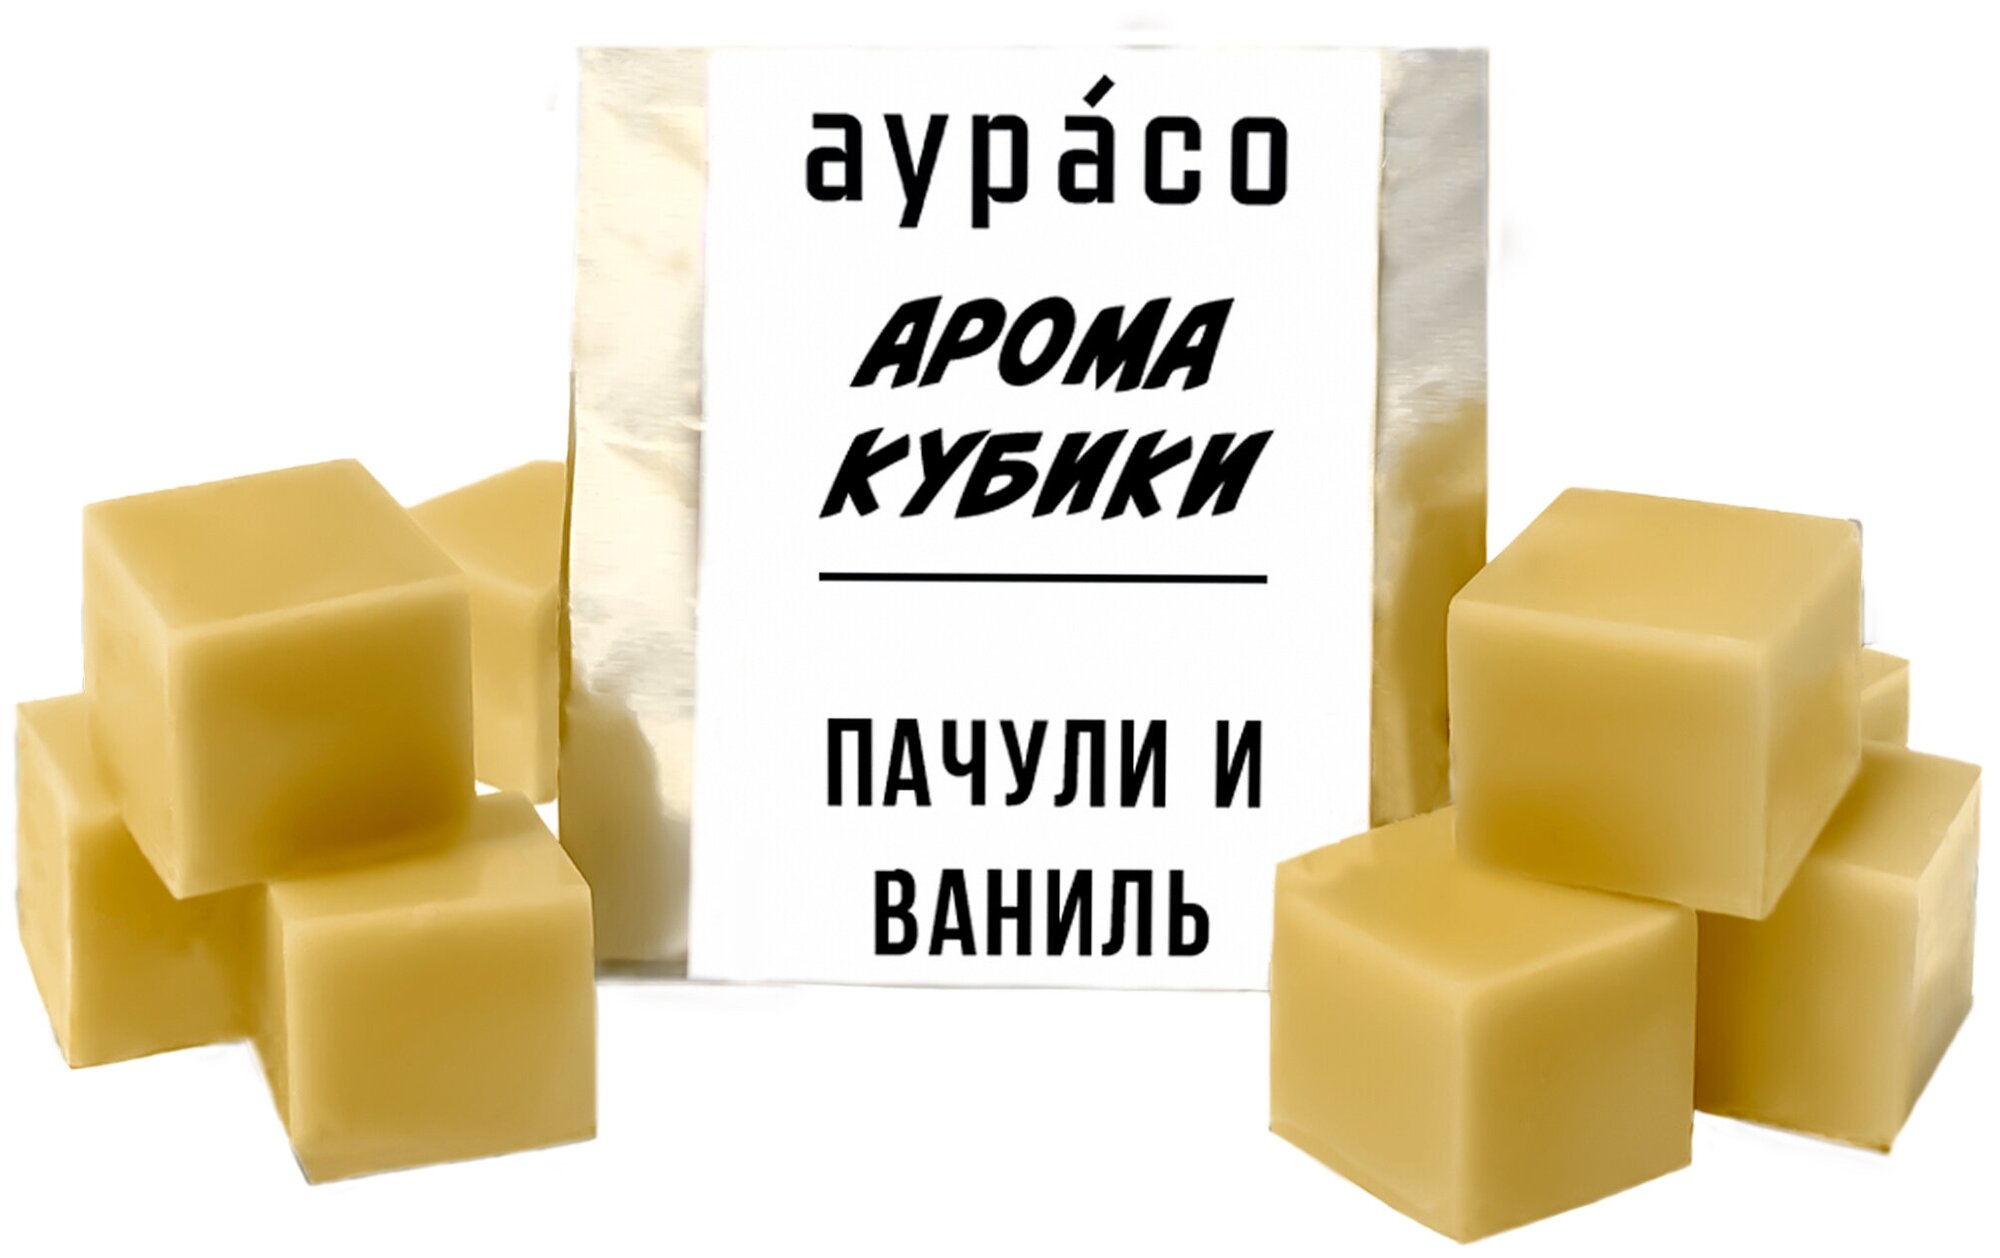 Пачули и ваниль - ароматические кубики Аурасо ароматический воск для аромалампы 9 штук